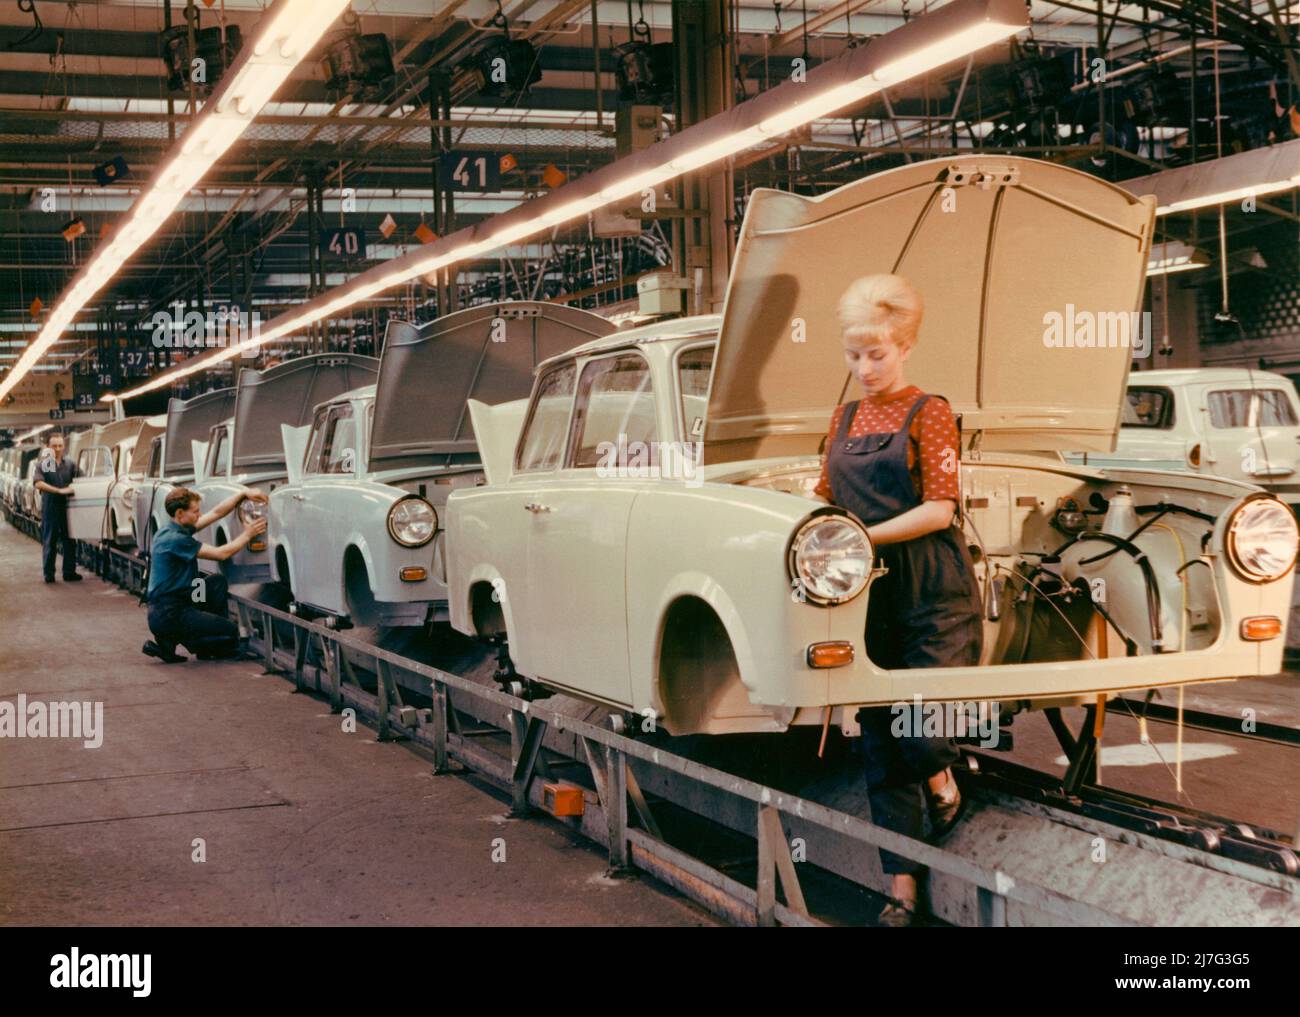 La voiture Trabant. Allemagne de l'est VEB Sachsenring Automobilwerk. Trabant a commencé la fabrication en 1957 et la production a duré jusqu'en 1991. Au total, 3 051385 Trabants ont été fabriqués. Trabant a été développé comme réponse est-allemande à Volkswagen et la vision d'une voiture pour les gens. Il a été appelé Trabbi ou Trabi et est devenu la voiture la plus commune en Allemagne de l'est. Trabant est venu pour être un peu un symbole pour l'Allemagne de l'est au moment de la chute du mur de Berlin. Photo prise dans la carfabrique de Trabant à Sachsen en 1960s. La jeune femme debout à la ligne de montage a la coiffure typique de la 1960s, le be Banque D'Images